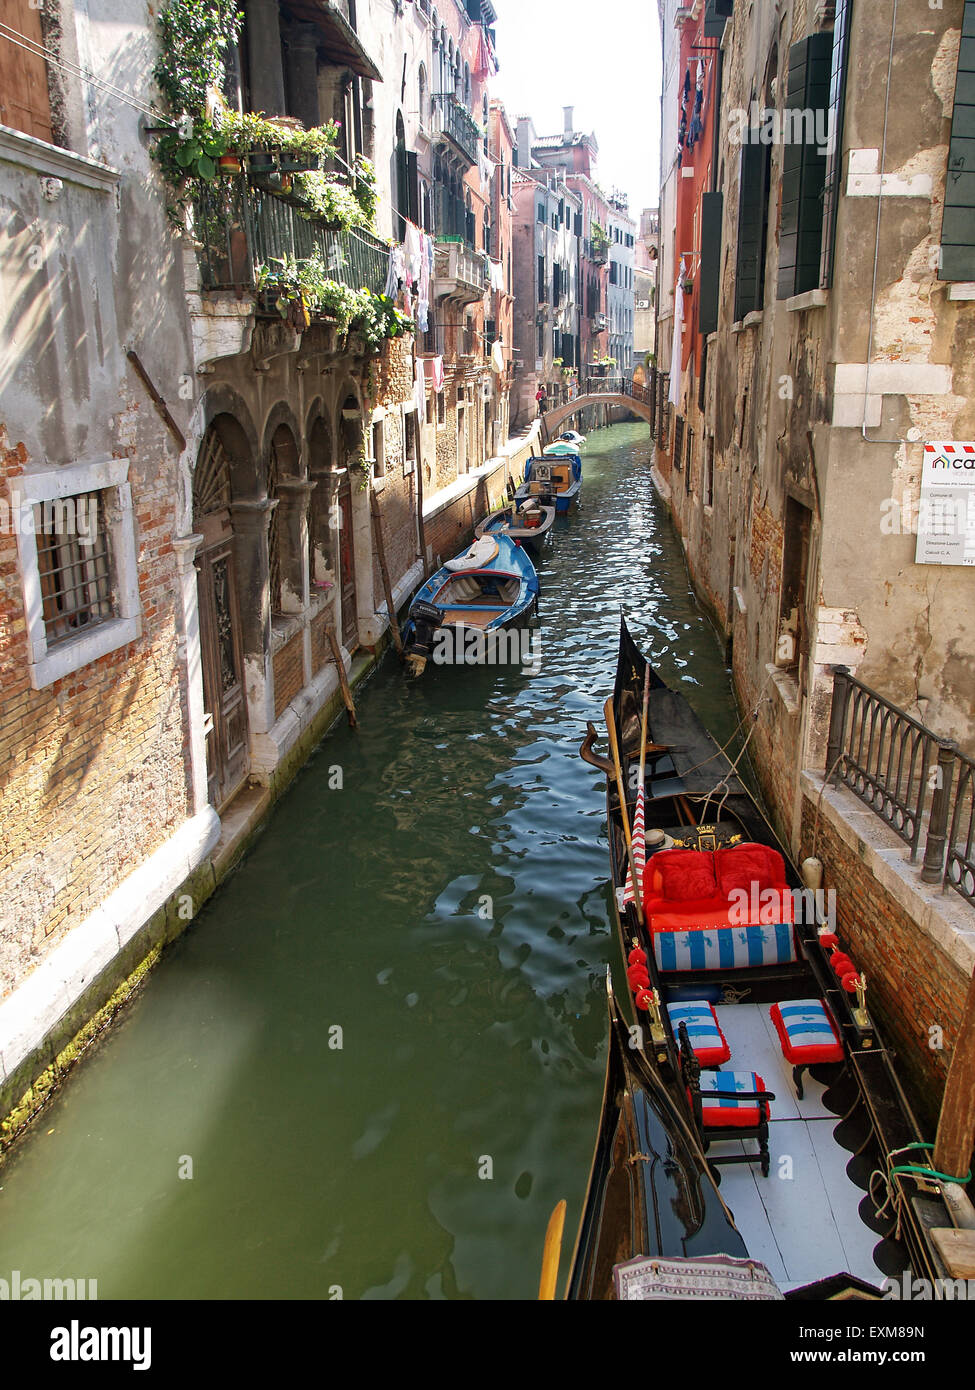 Blick auf einer Gondel vertäut in einem engen Kanal in Venedig mit schönen Häusern an den Seiten. Venedig. Italien. Stockfoto